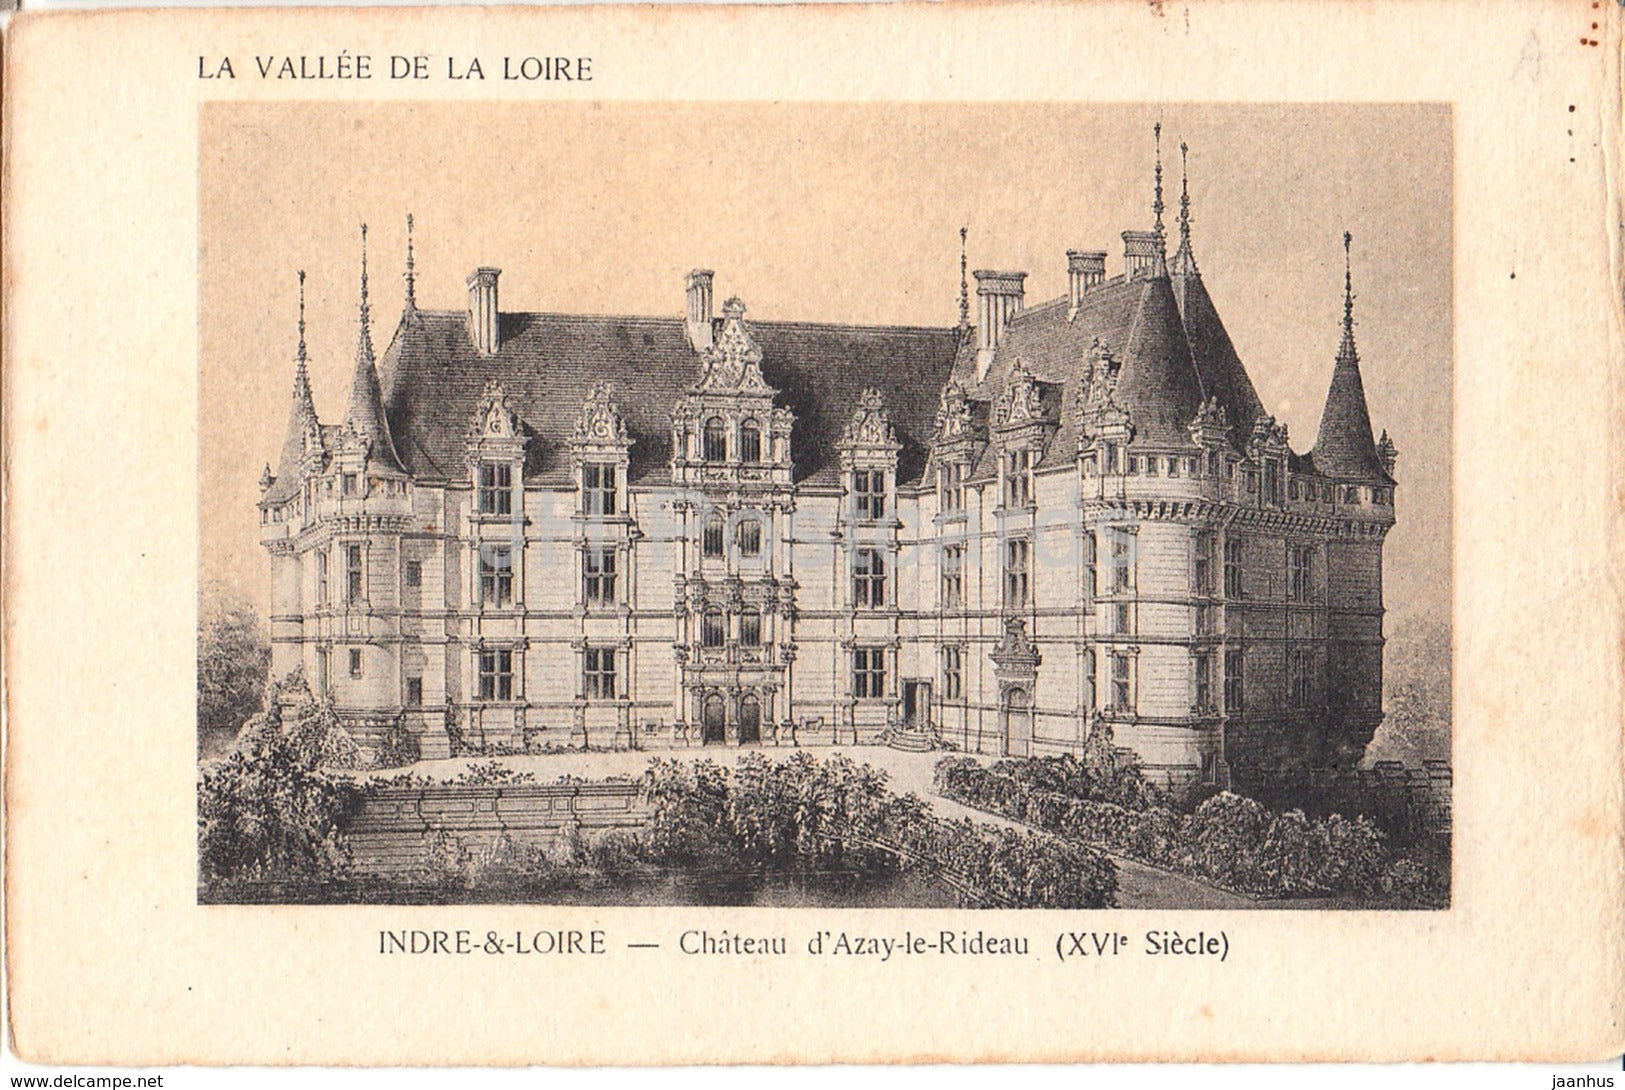 Chateau d' Azay Le Rideau - Indre & Loire - La Valle de la Loire - castle - 16 - old postcard - France - unused